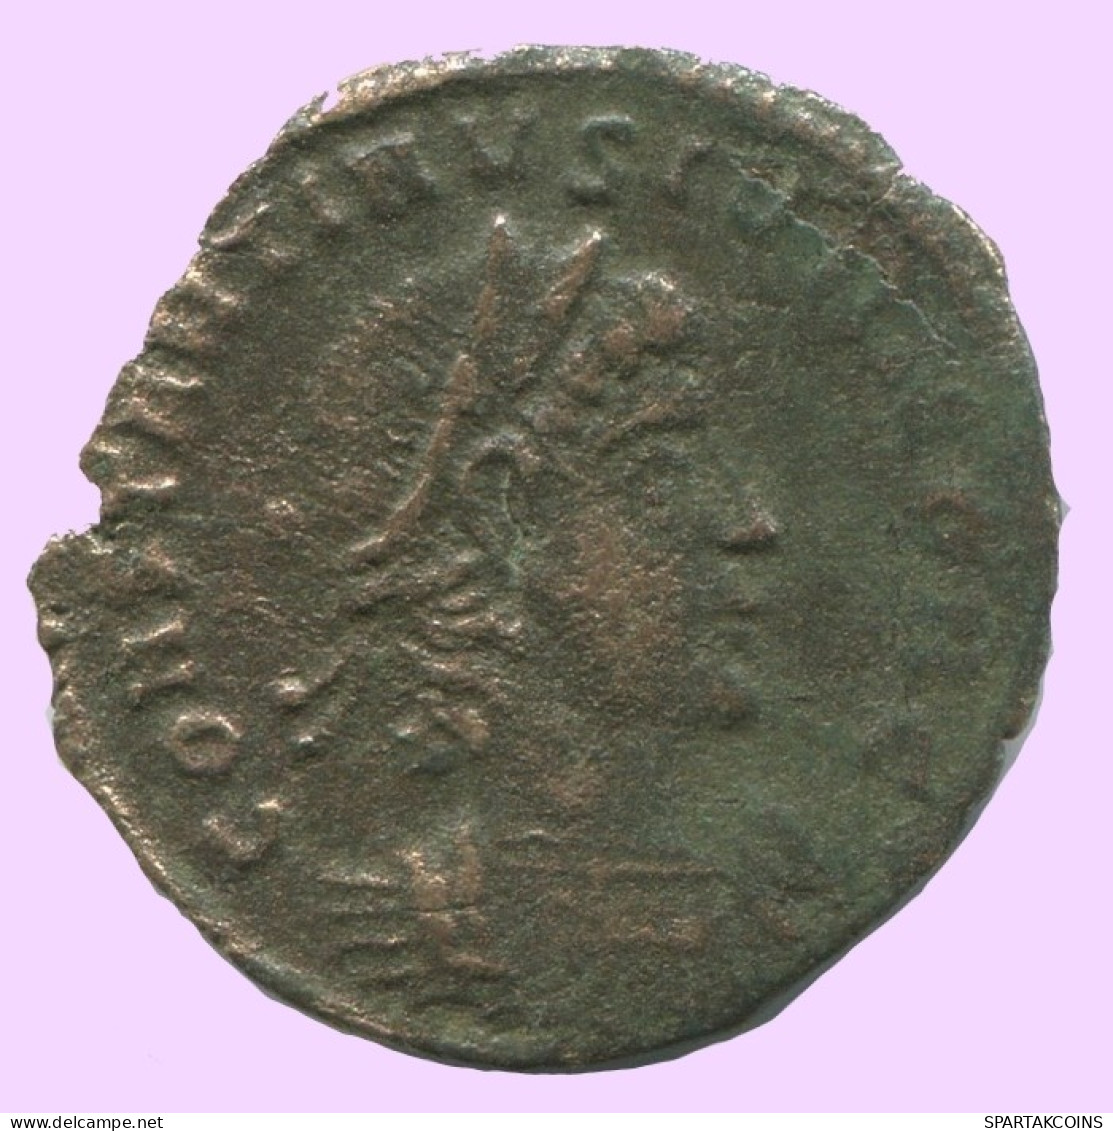 LATE ROMAN EMPIRE Follis Ancient Authentic Roman Coin 0.9g/16mm #ANT2018.7.U.A - Der Spätrömanischen Reich (363 / 476)